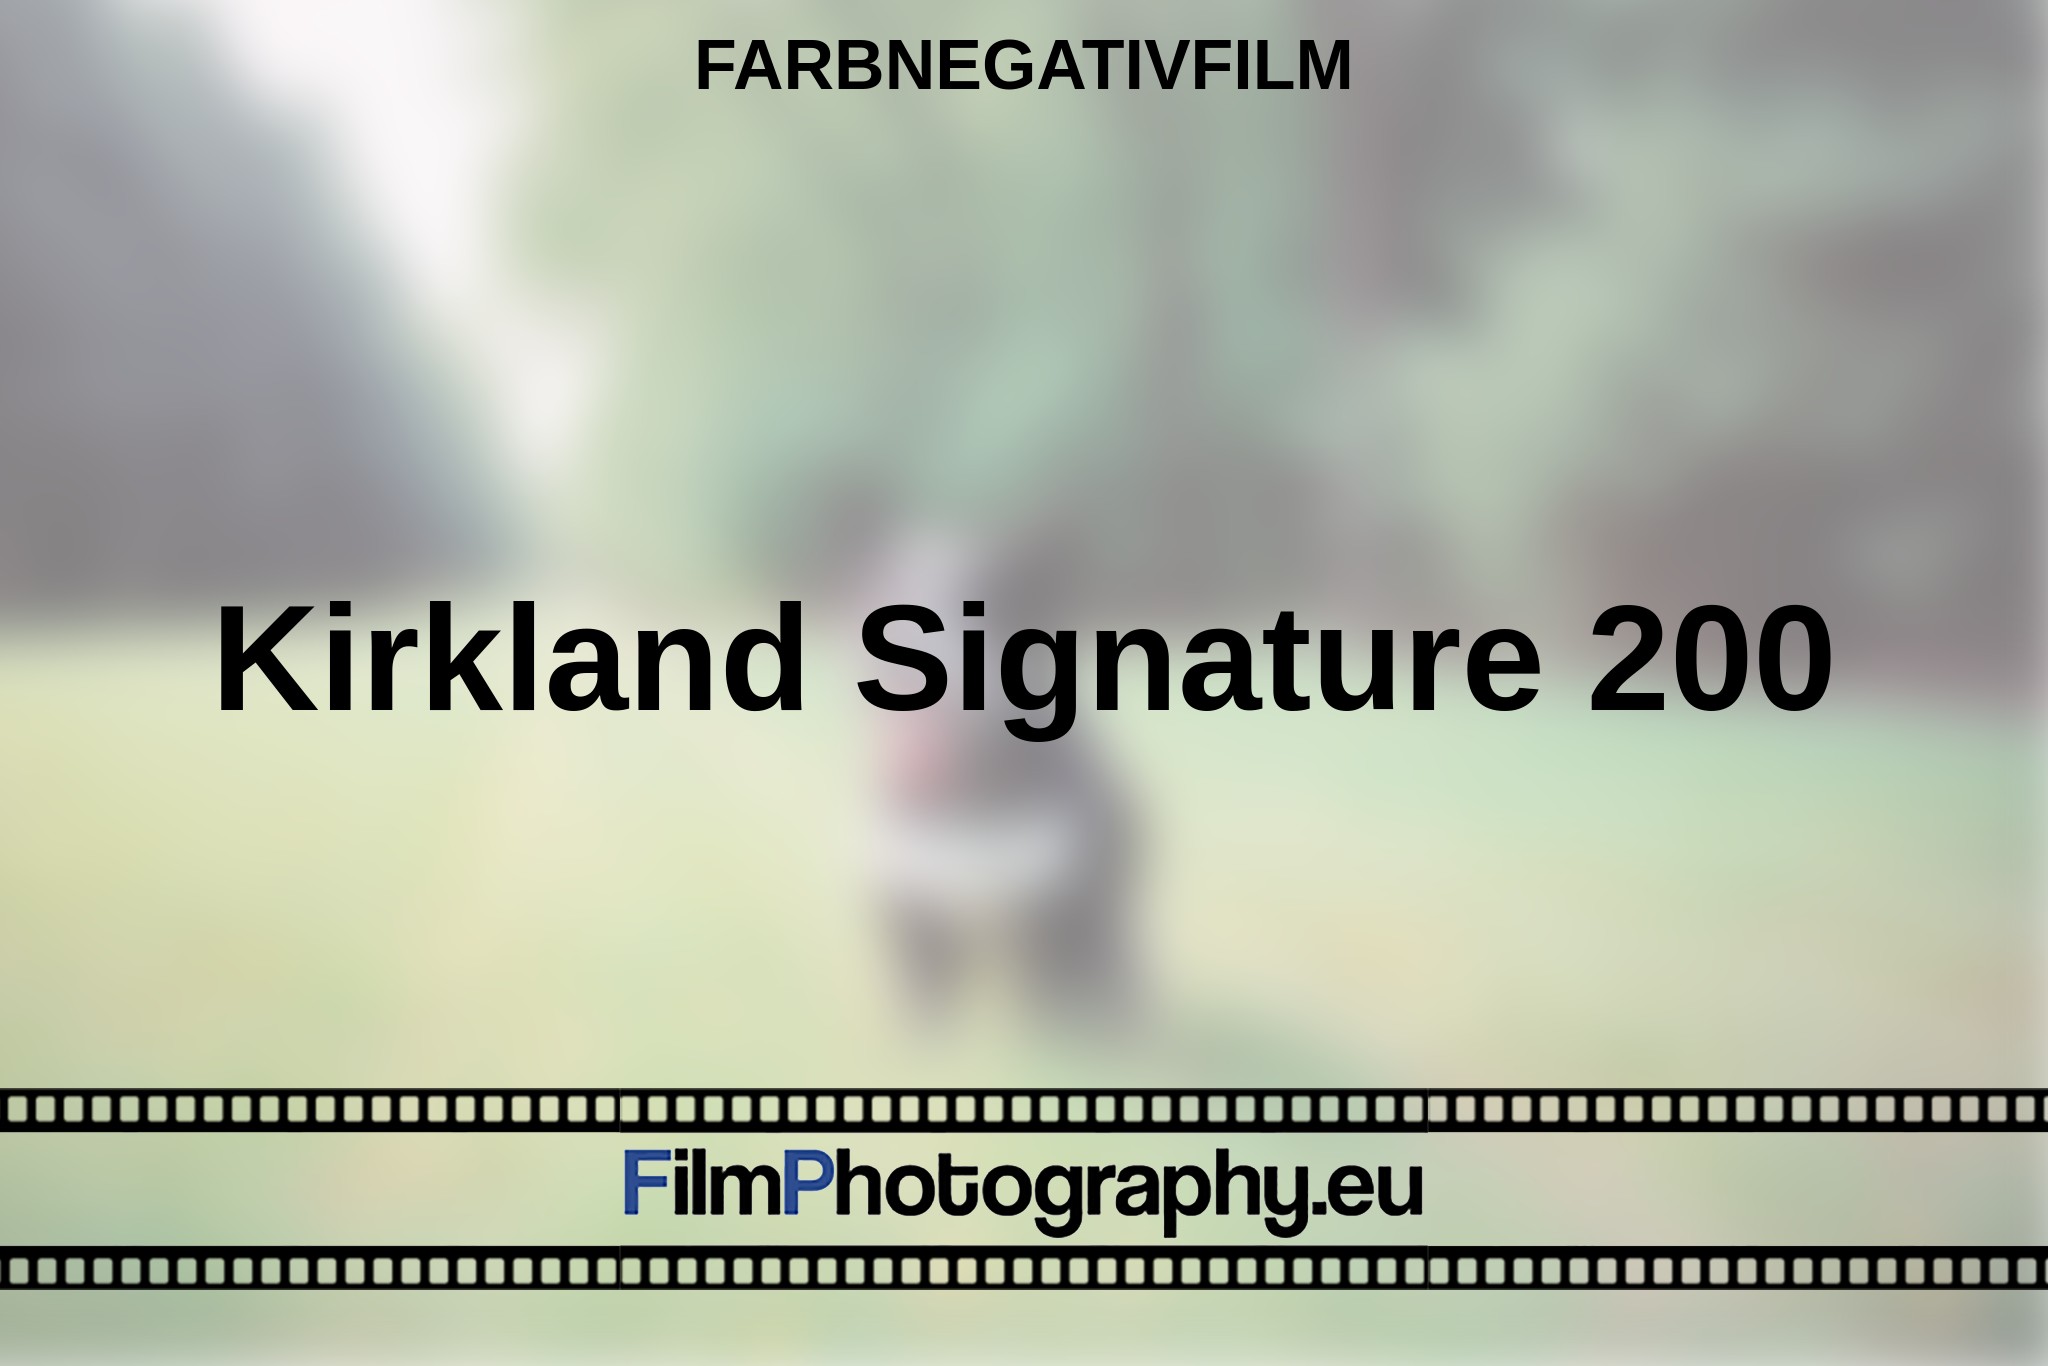 kirkland-signature-200-farbnegativfilm-bnv.jpg